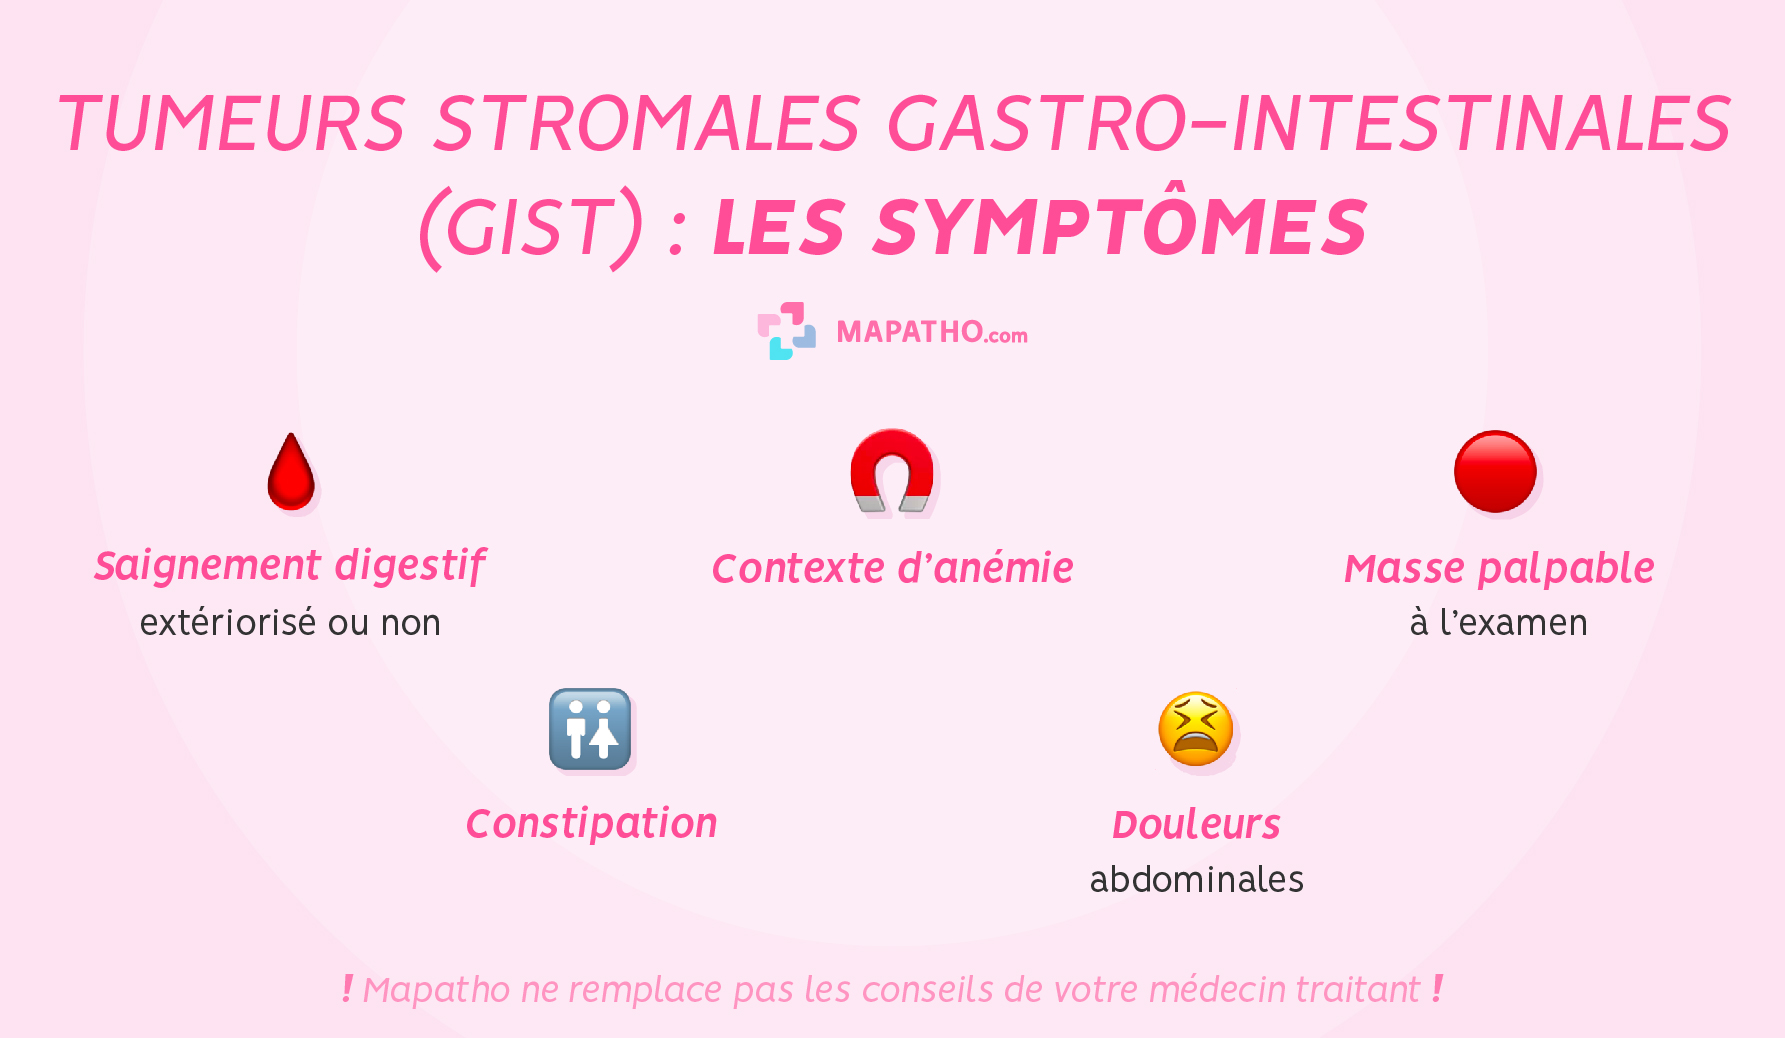 Les symptômes du GIST - Tumeurs stromales gastro-intestinales